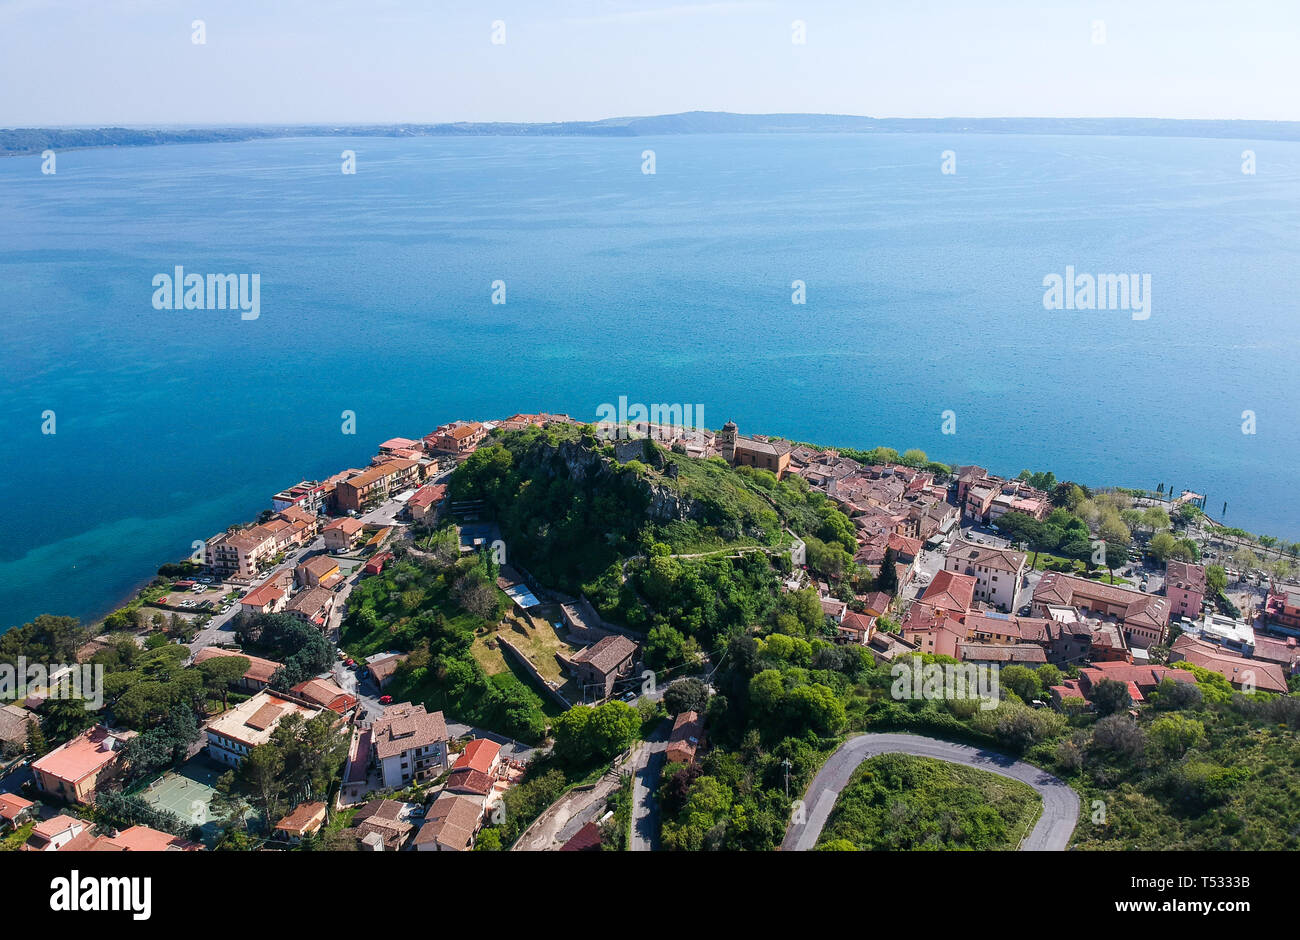 Aerial view of Trevignano Romano, on Bracciano lake, near Rome. Italy Stock Photo